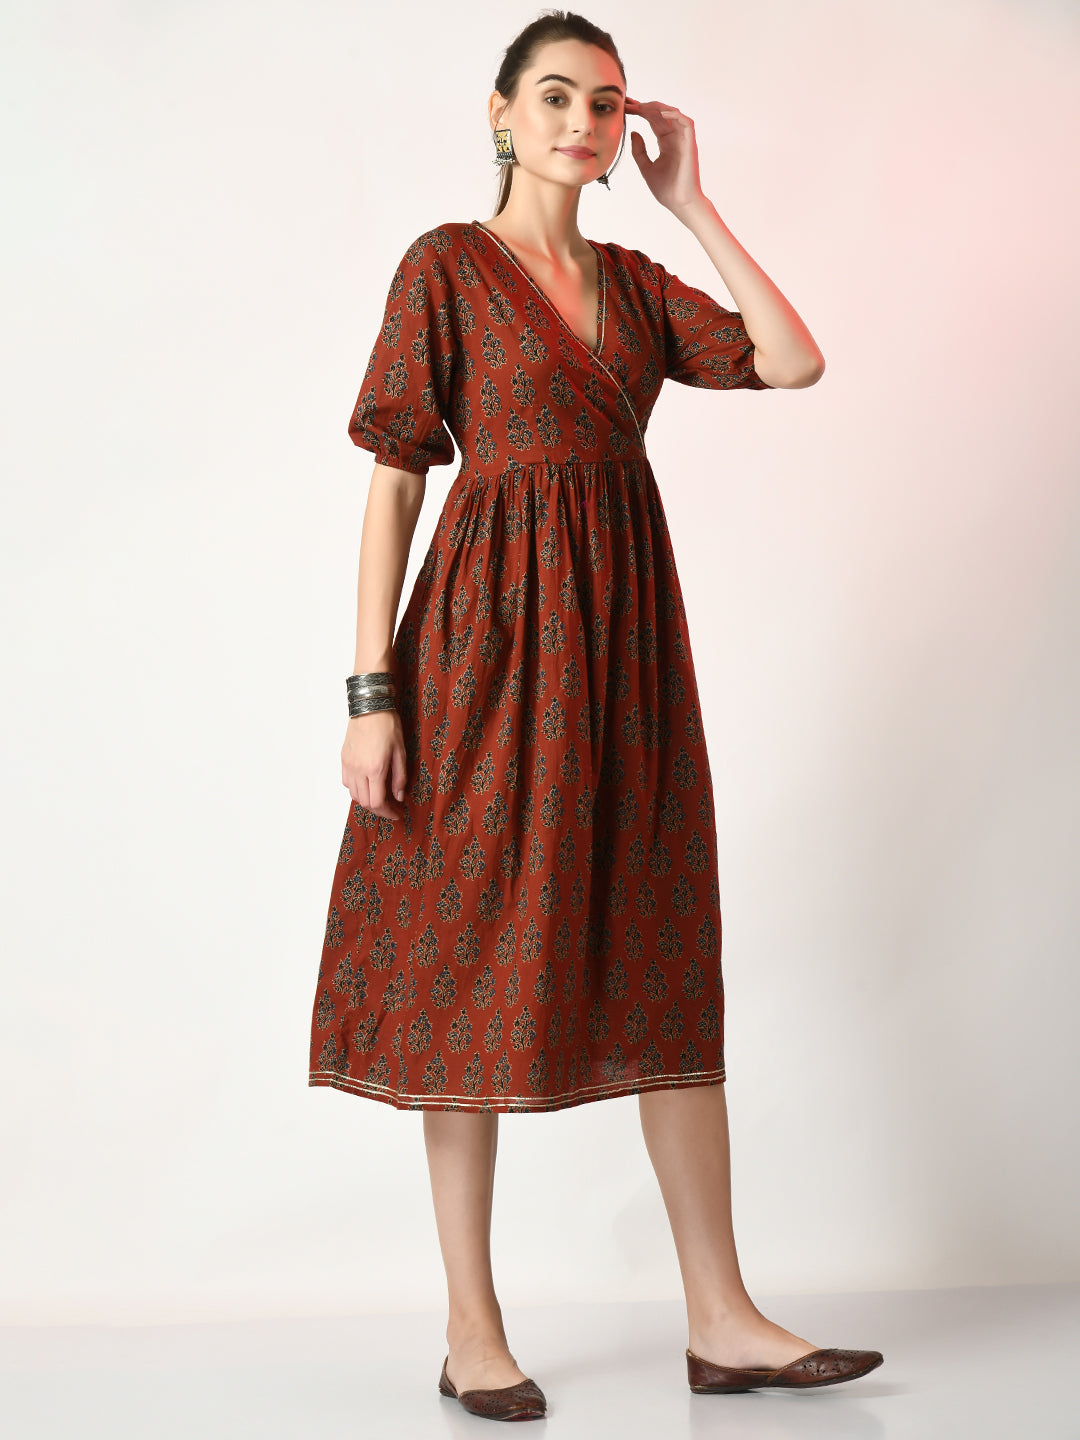 Women's Rust Empire Printed Dress - Myshka